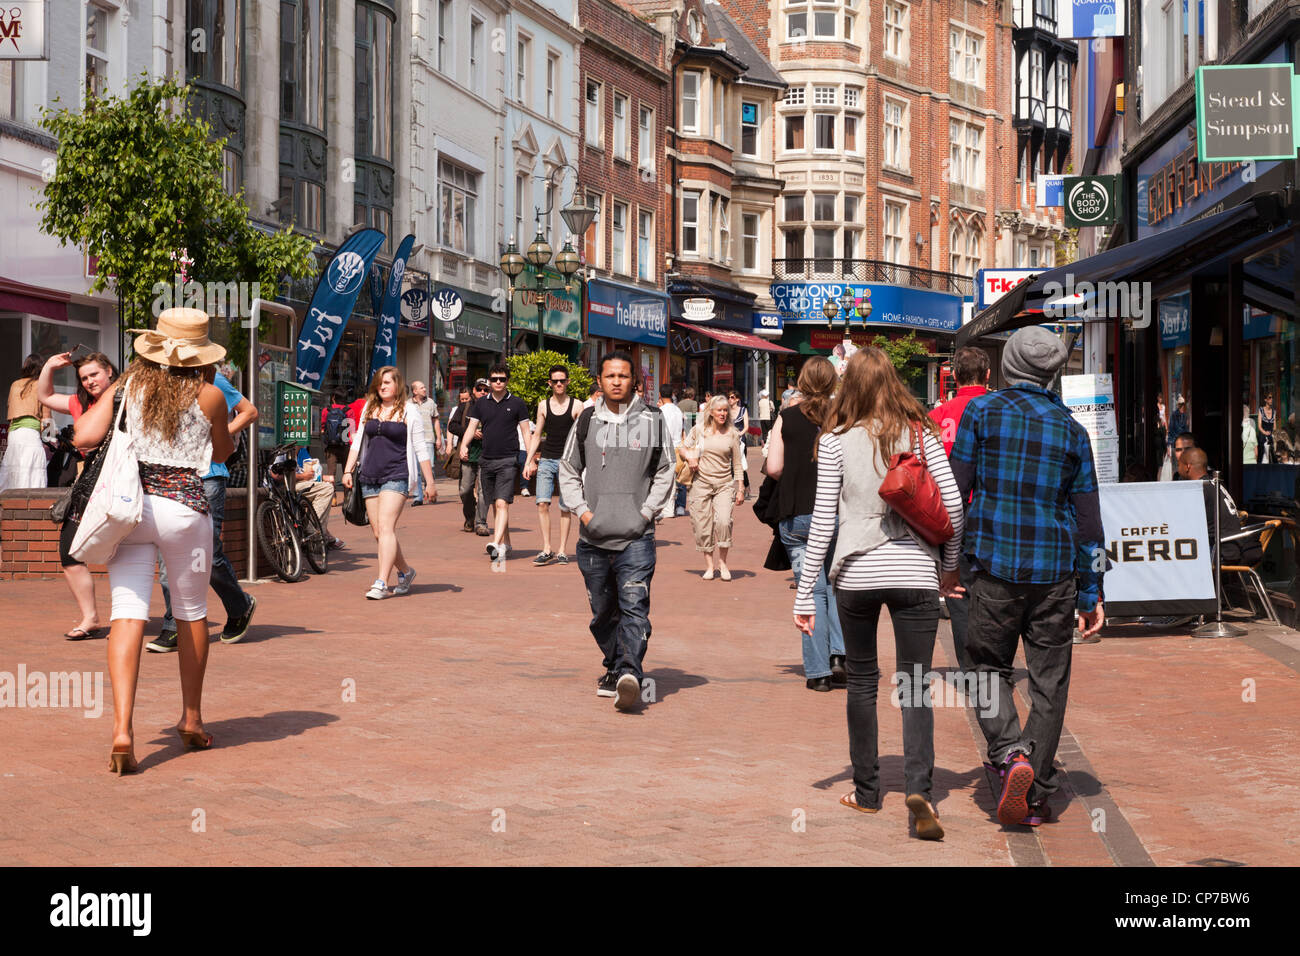 Une scène mouvementée à Old Christchurch Road, l'une des principales rues commerçantes de Bournemouth, avec la foule de personnes à pied. Banque D'Images